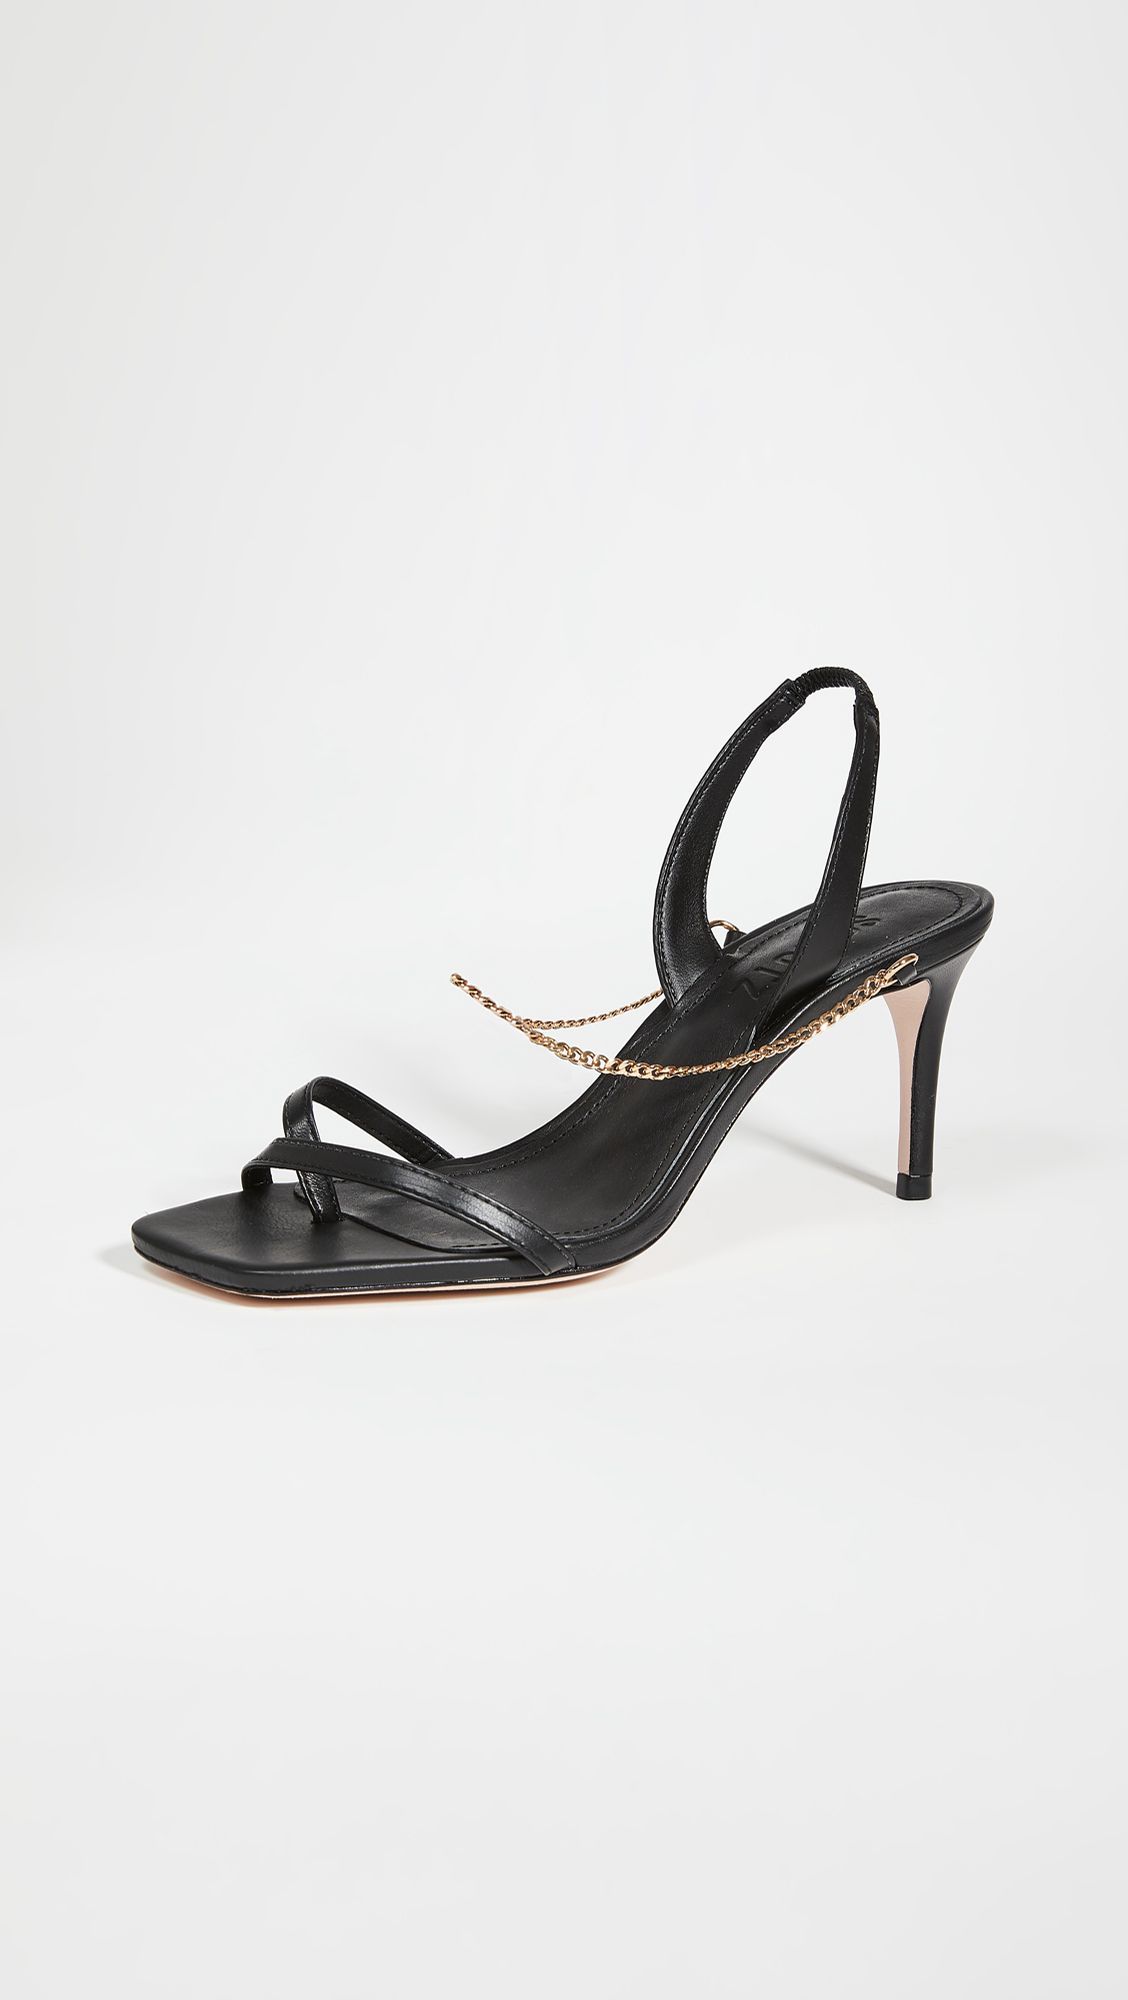 comfy black strappy heels